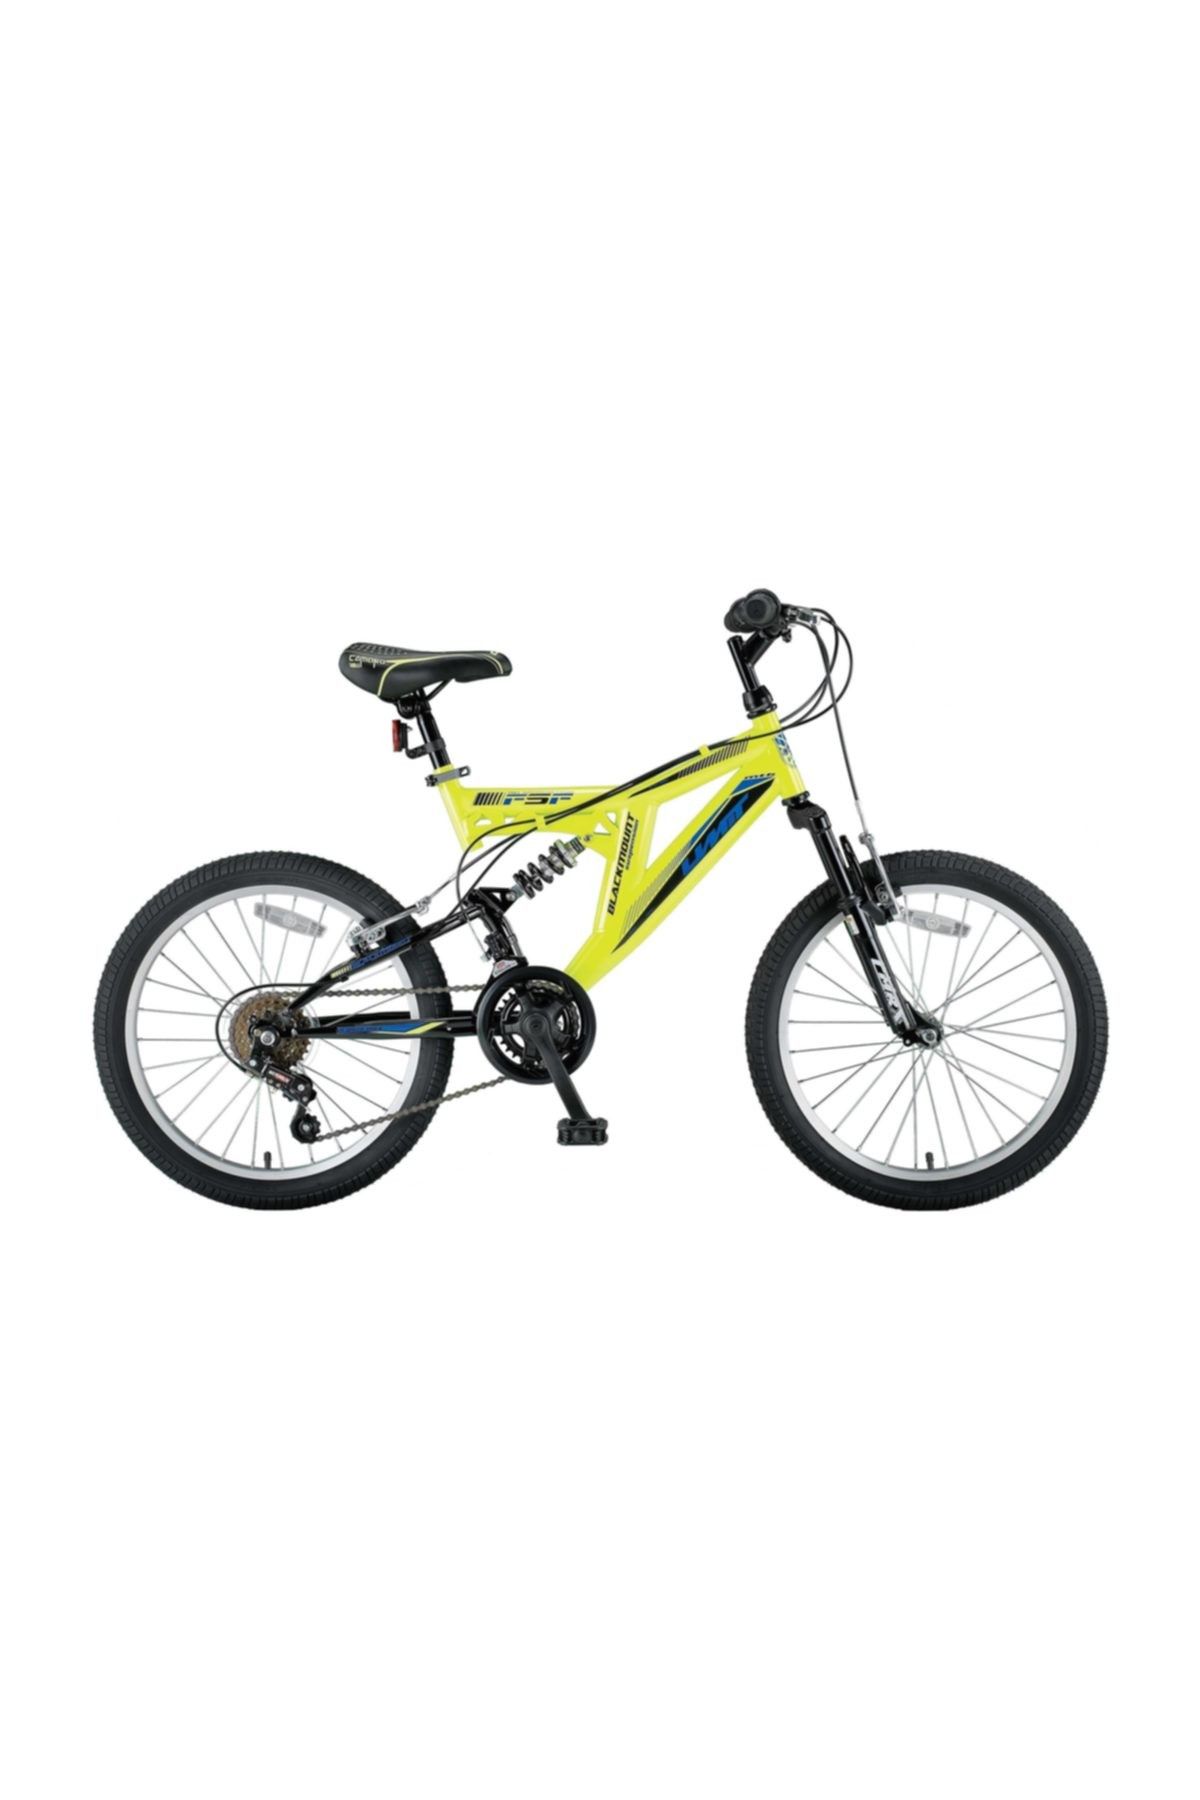 Ümit 2030 Blackmount 18 Vites 20 Jant Bisiklet 2018 Model 337 BEYAZ KIRMIZI